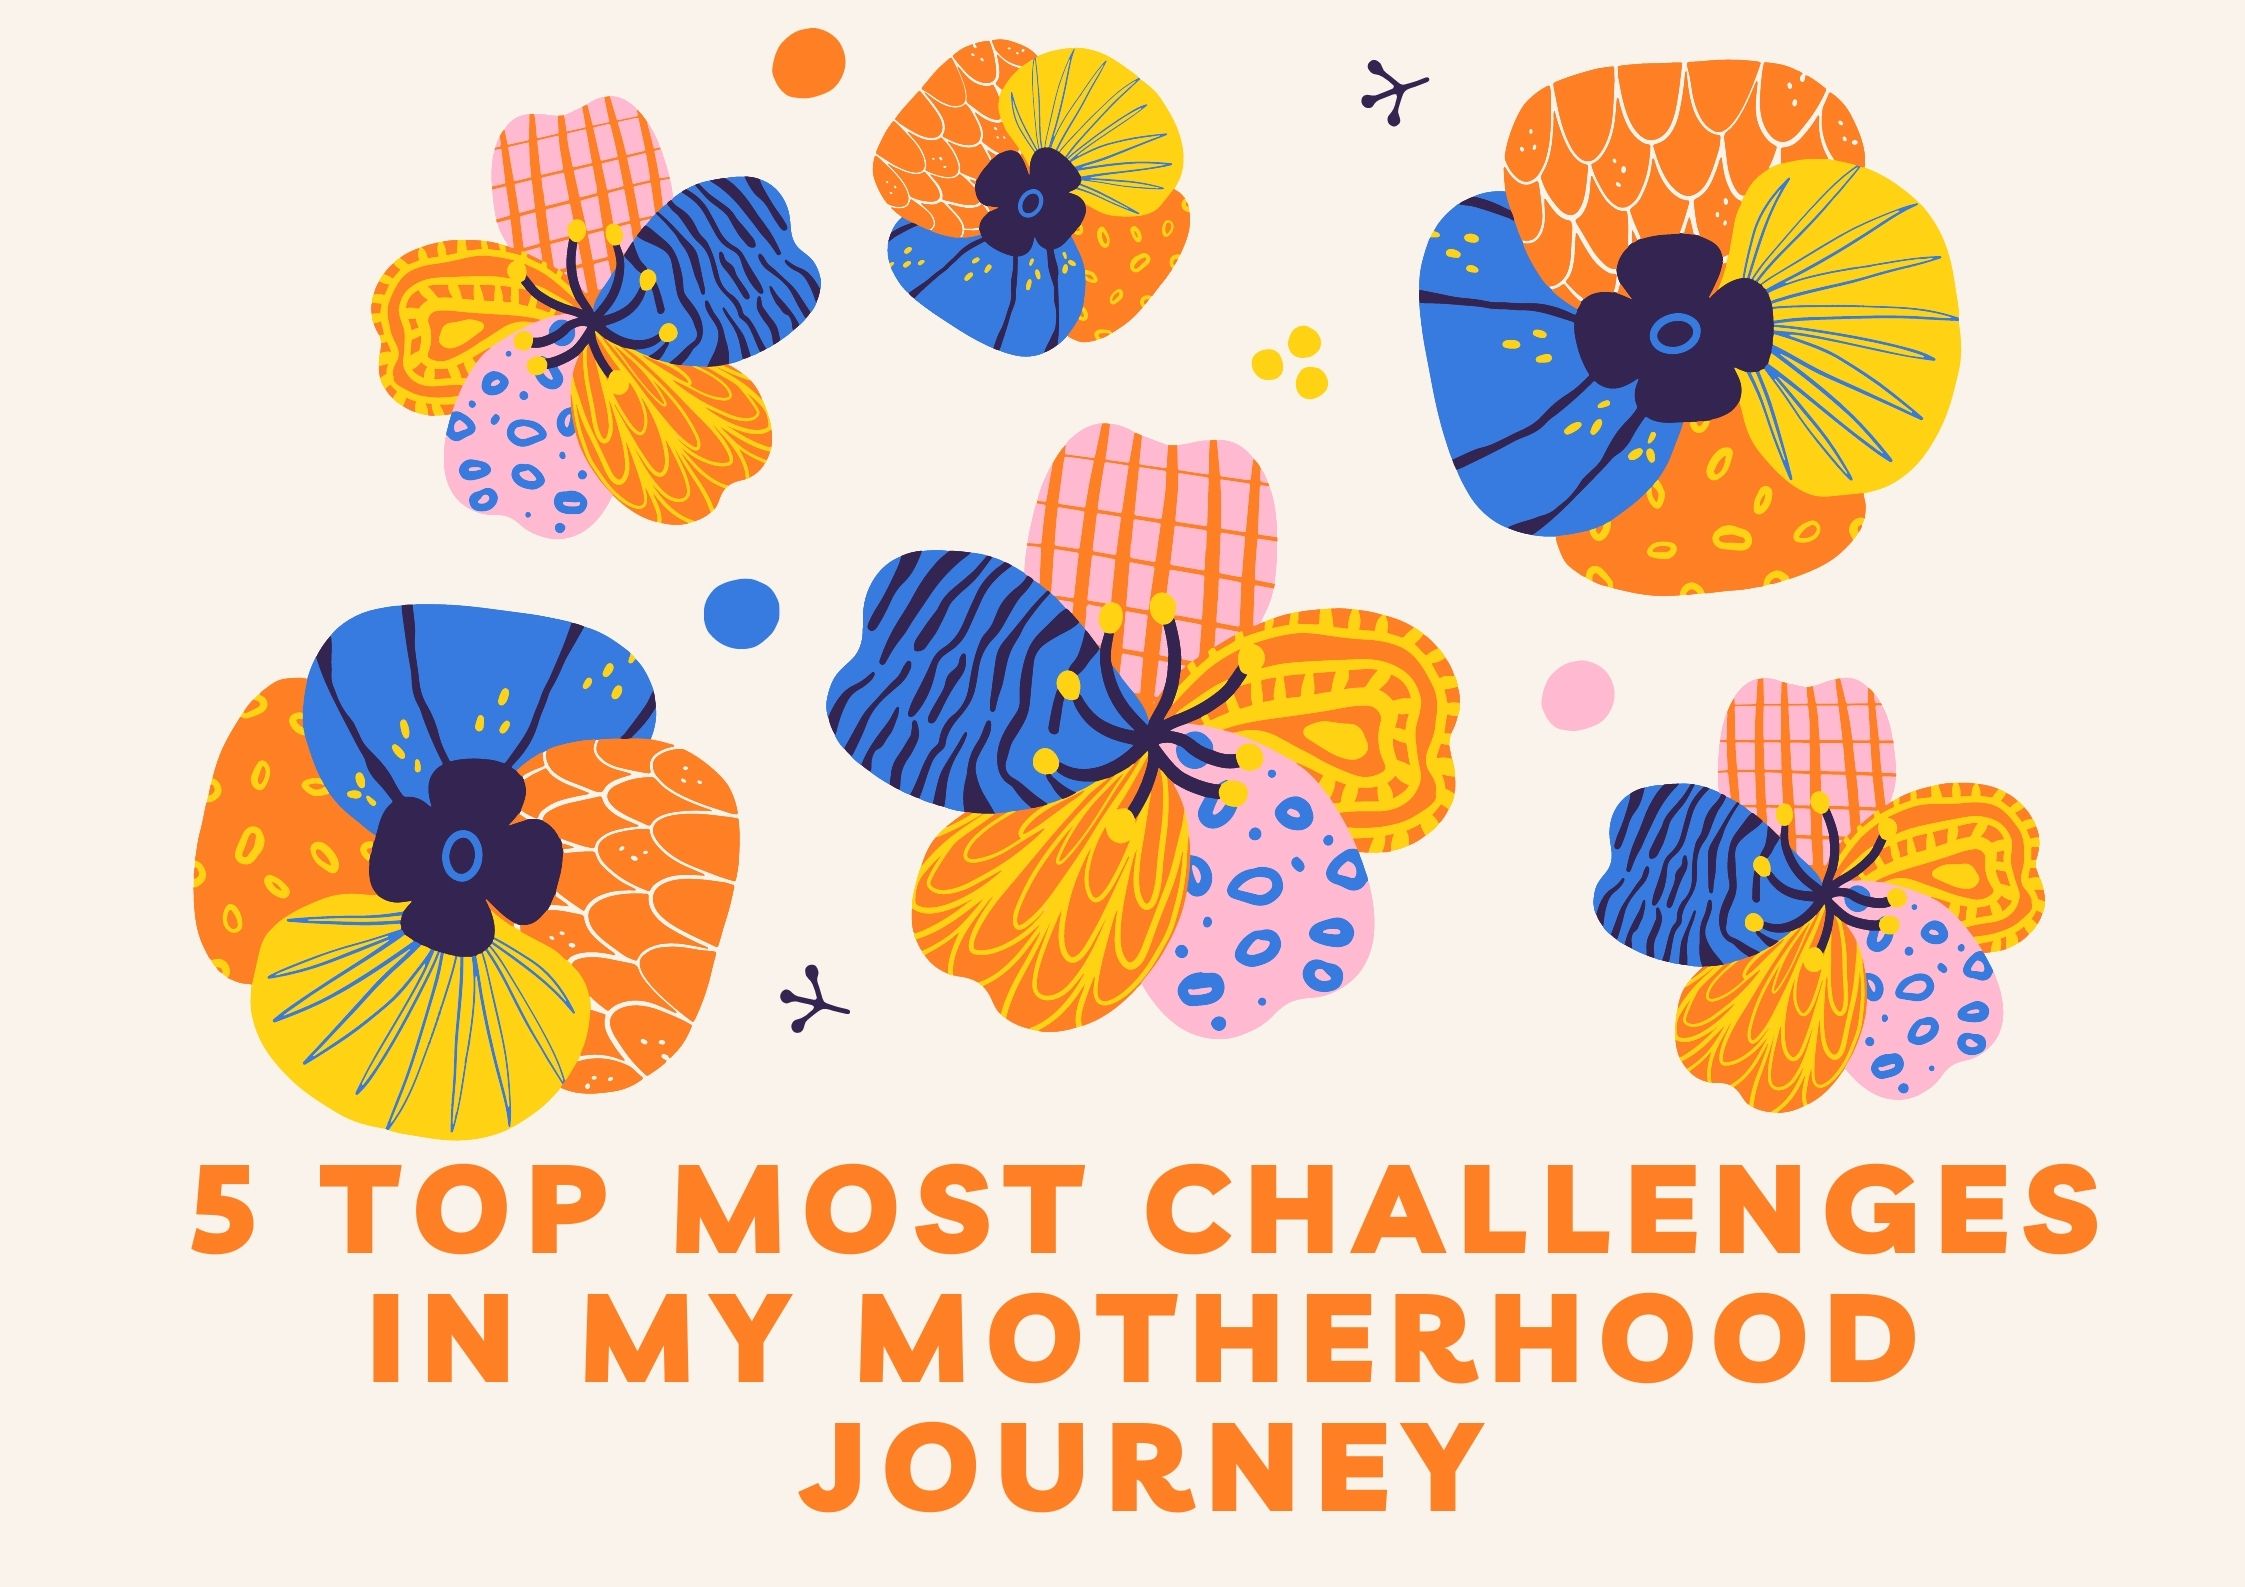 5 Top Most Challenges in My Motherhood Journey